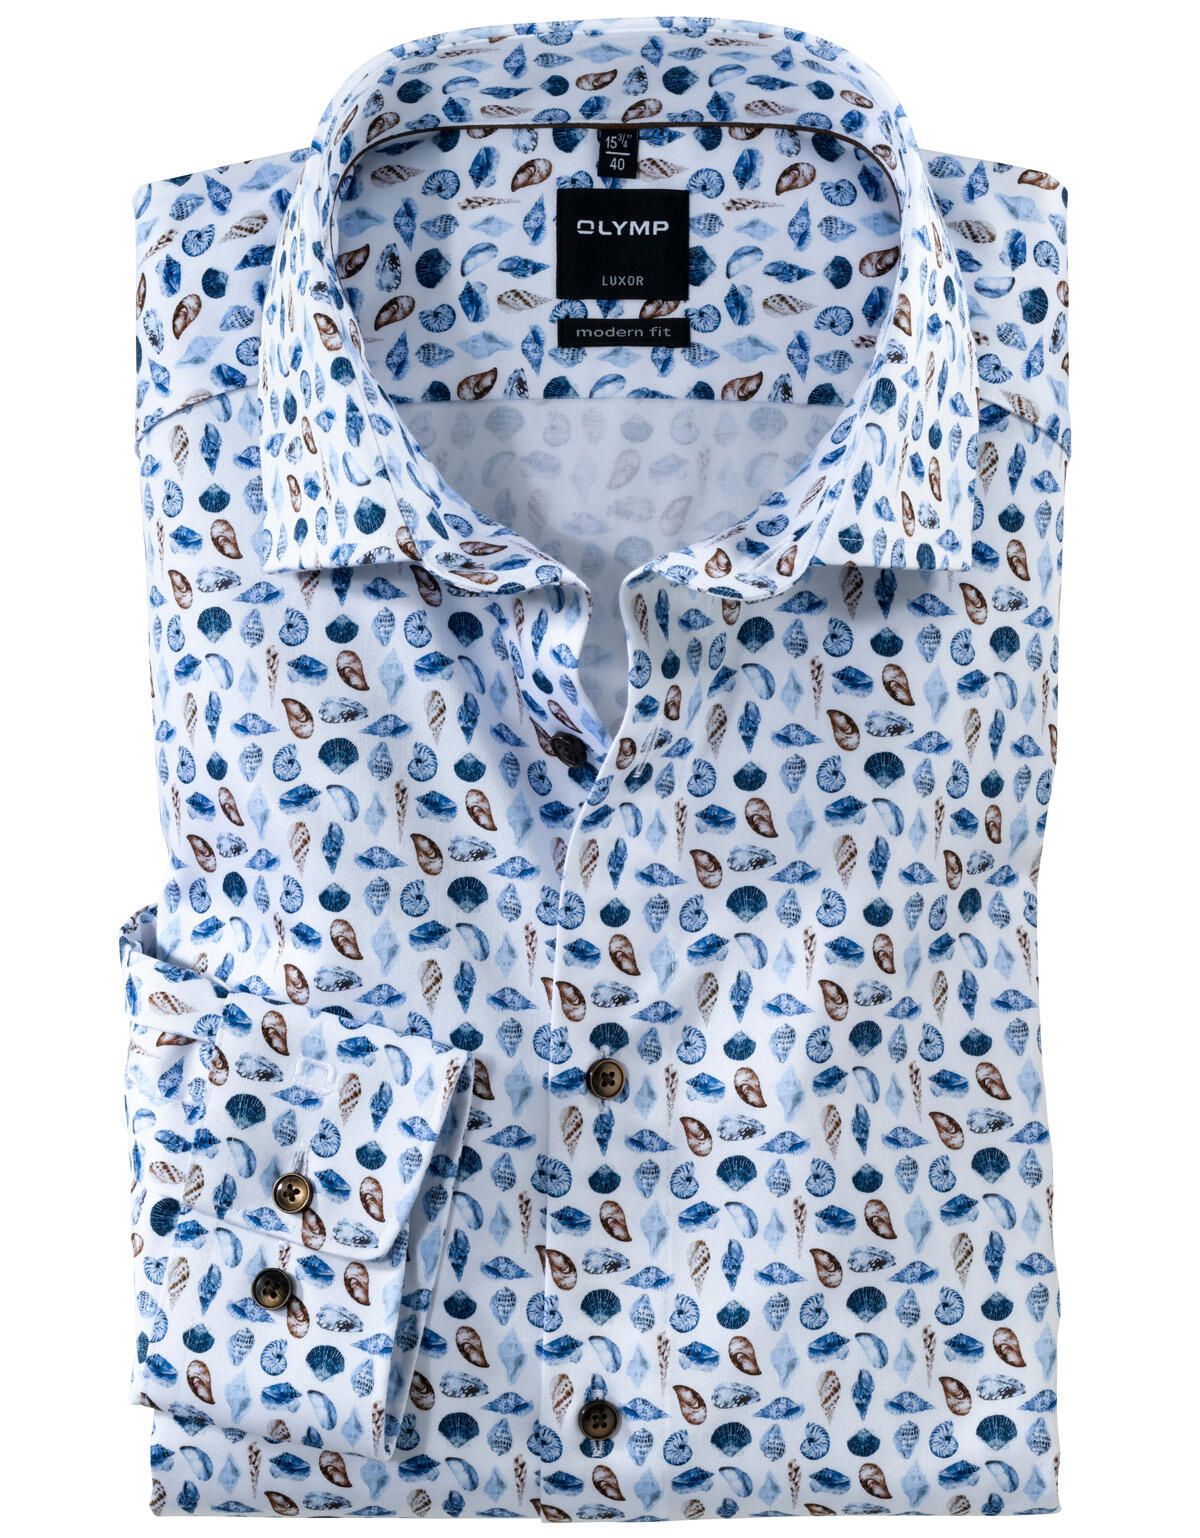 Рубашка мужская OLYMP Luxor, modern fit с принтом[КОРИЧНЕВЫЙ]